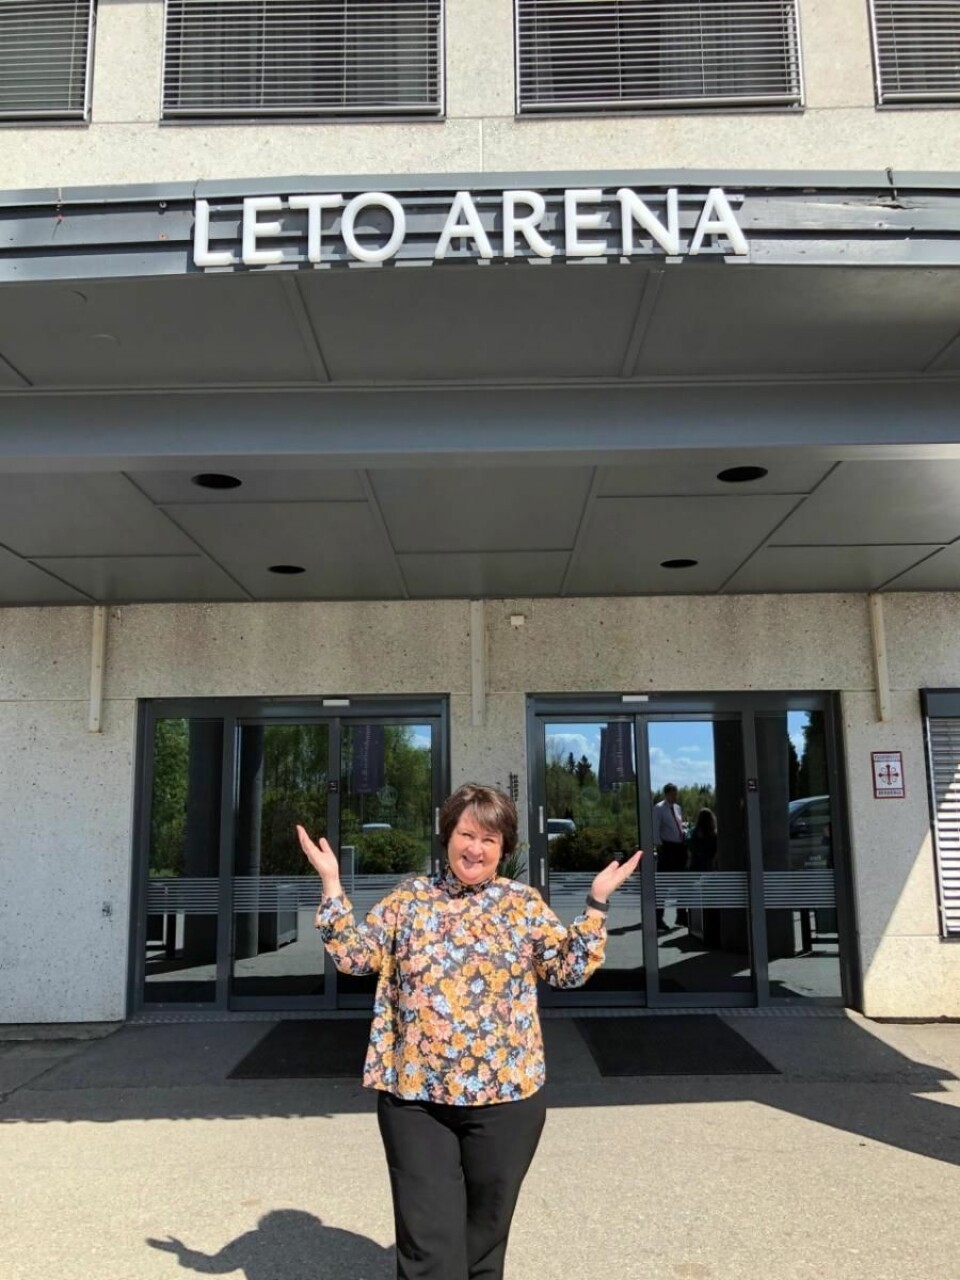 Ønsker velkommen til Best Western Leto Arena. (Foto: Best Western Leto Arena)